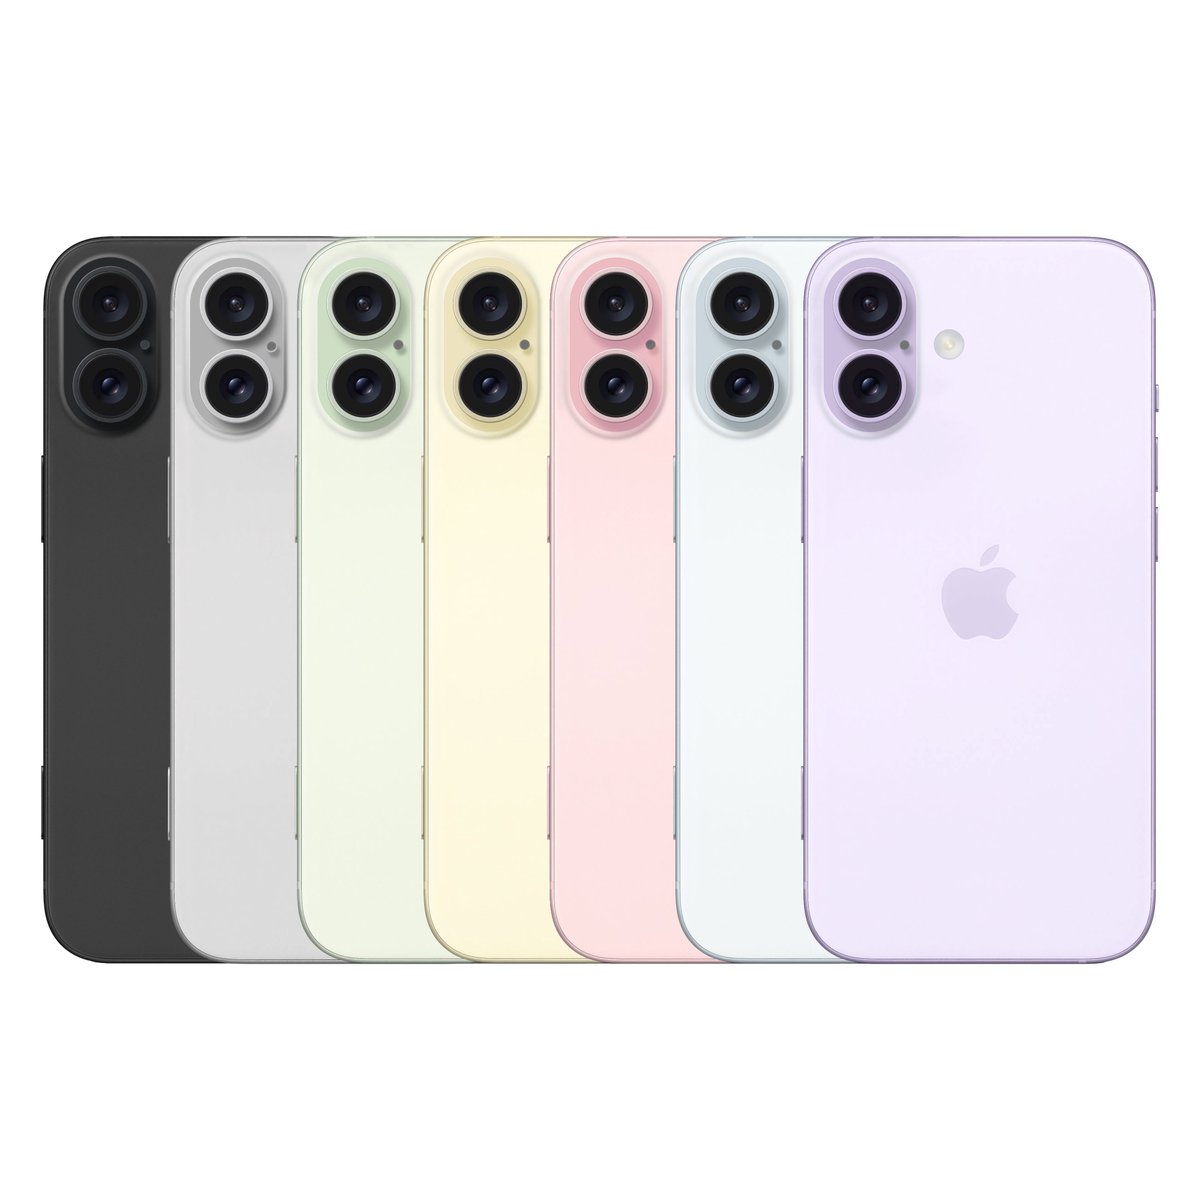 تسريبات حول جهاز iPhone 16 Plus 📱سيكون متاحا بهذه الألوان:
- أسود
- أبيض
- أخضر
- أصفر
- وردي
- أزرق
- أرجواني